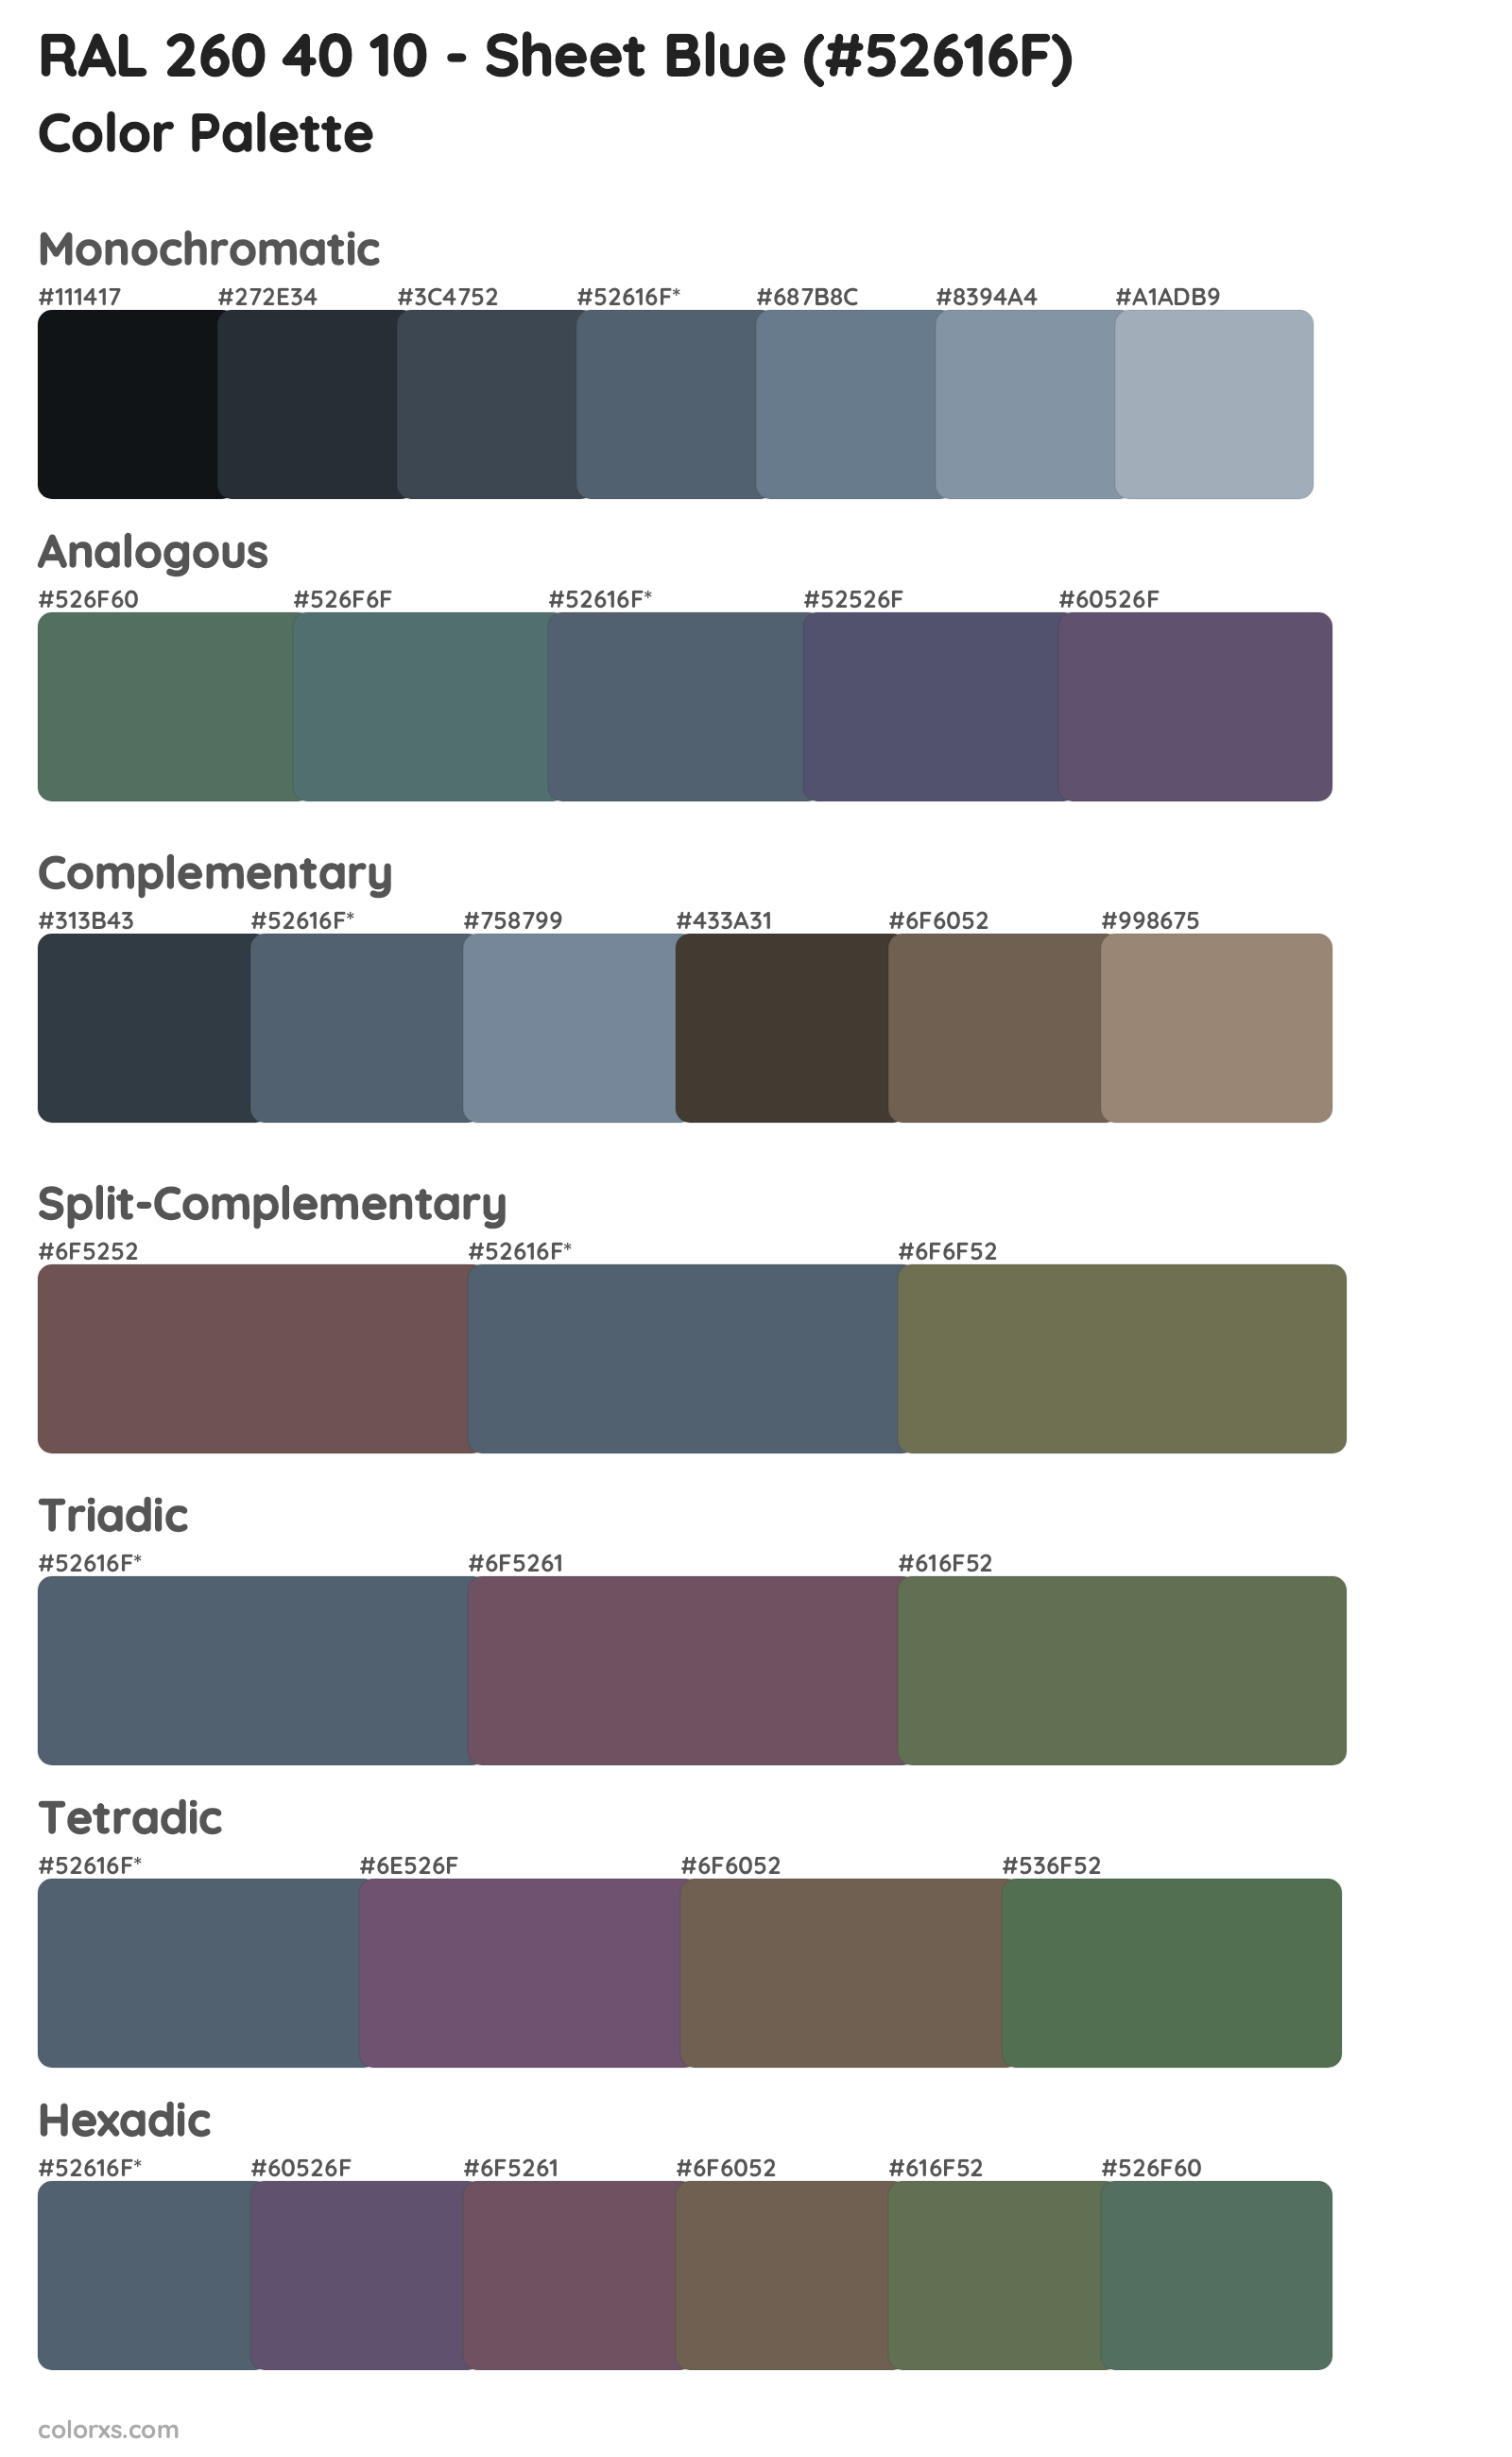 RAL 260 40 10 - Sheet Blue Color Scheme Palettes